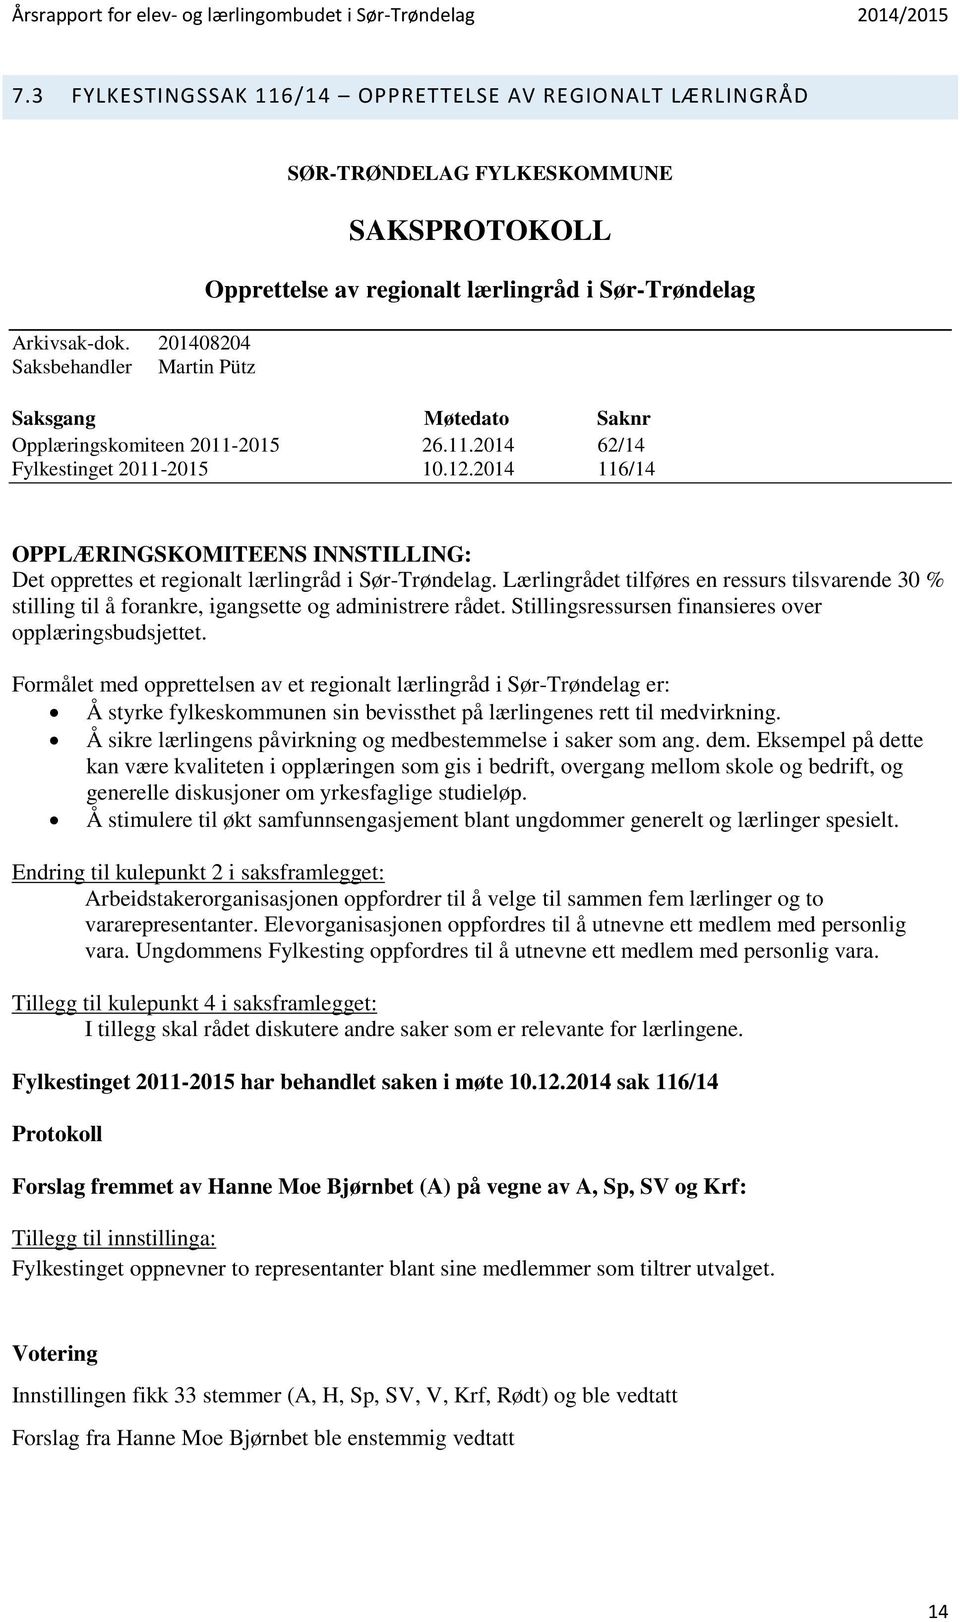 2015 26.11.2014 62/14 Fylkestinget 2011-2015 10.12.2014 116/14 OPPLÆRINGSKOMITEENS INNSTILLING: Det opprettes et regionalt lærlingråd i Sør-Trøndelag.